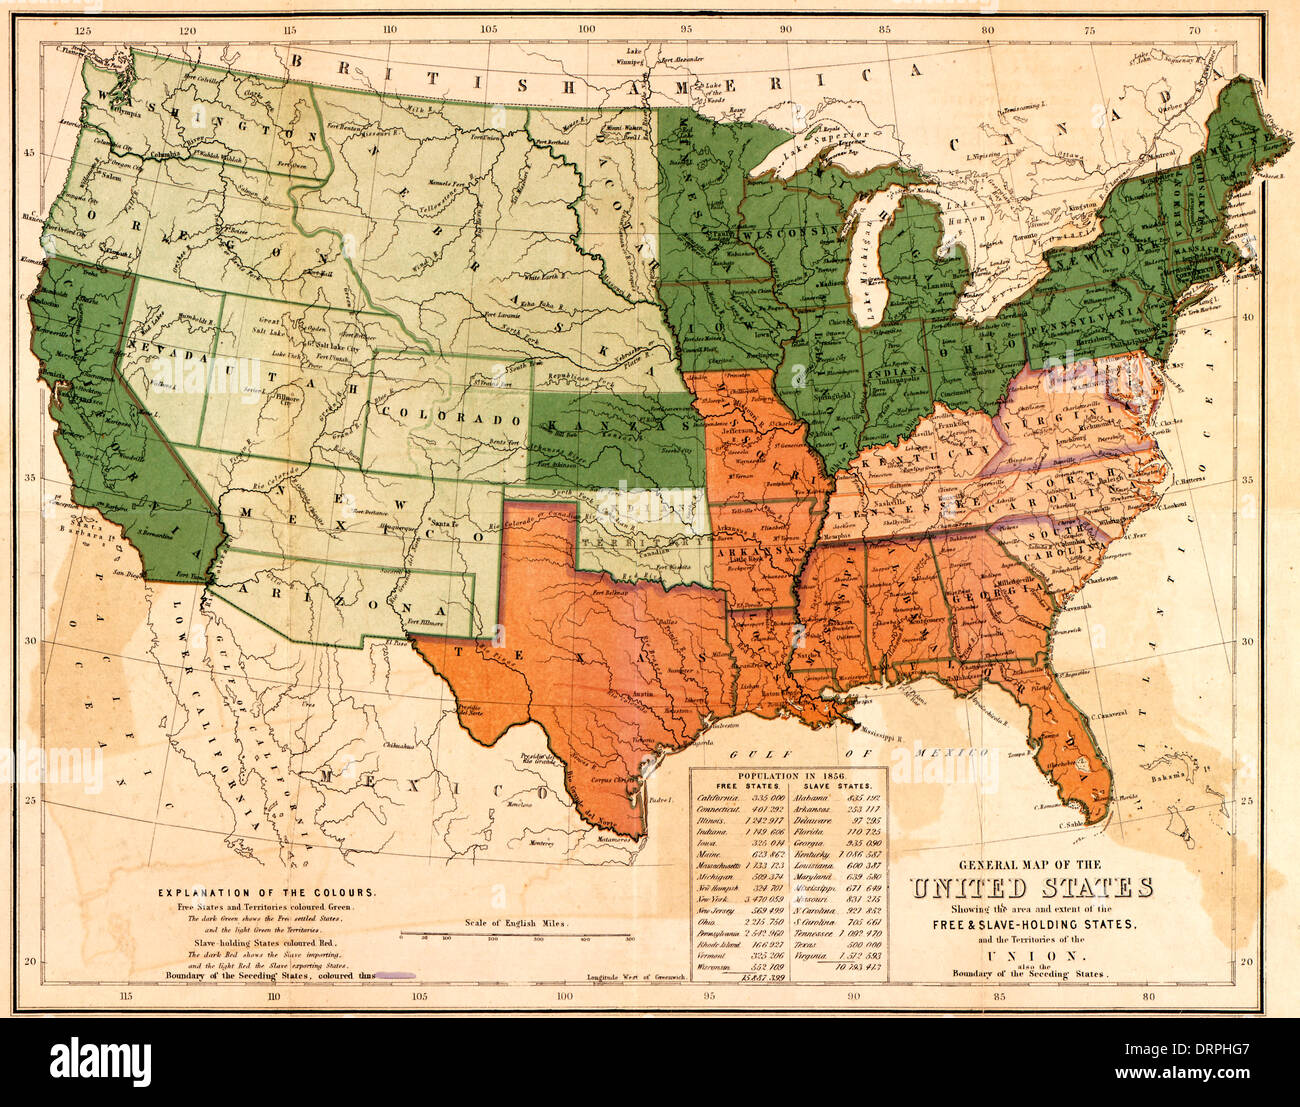 Mappa generale degli Stati Uniti, che mostra la zona e la misura del free & schiavo-holding Stati e territori dell'Unione : anche il limite della separazione membri 1861 Foto Stock